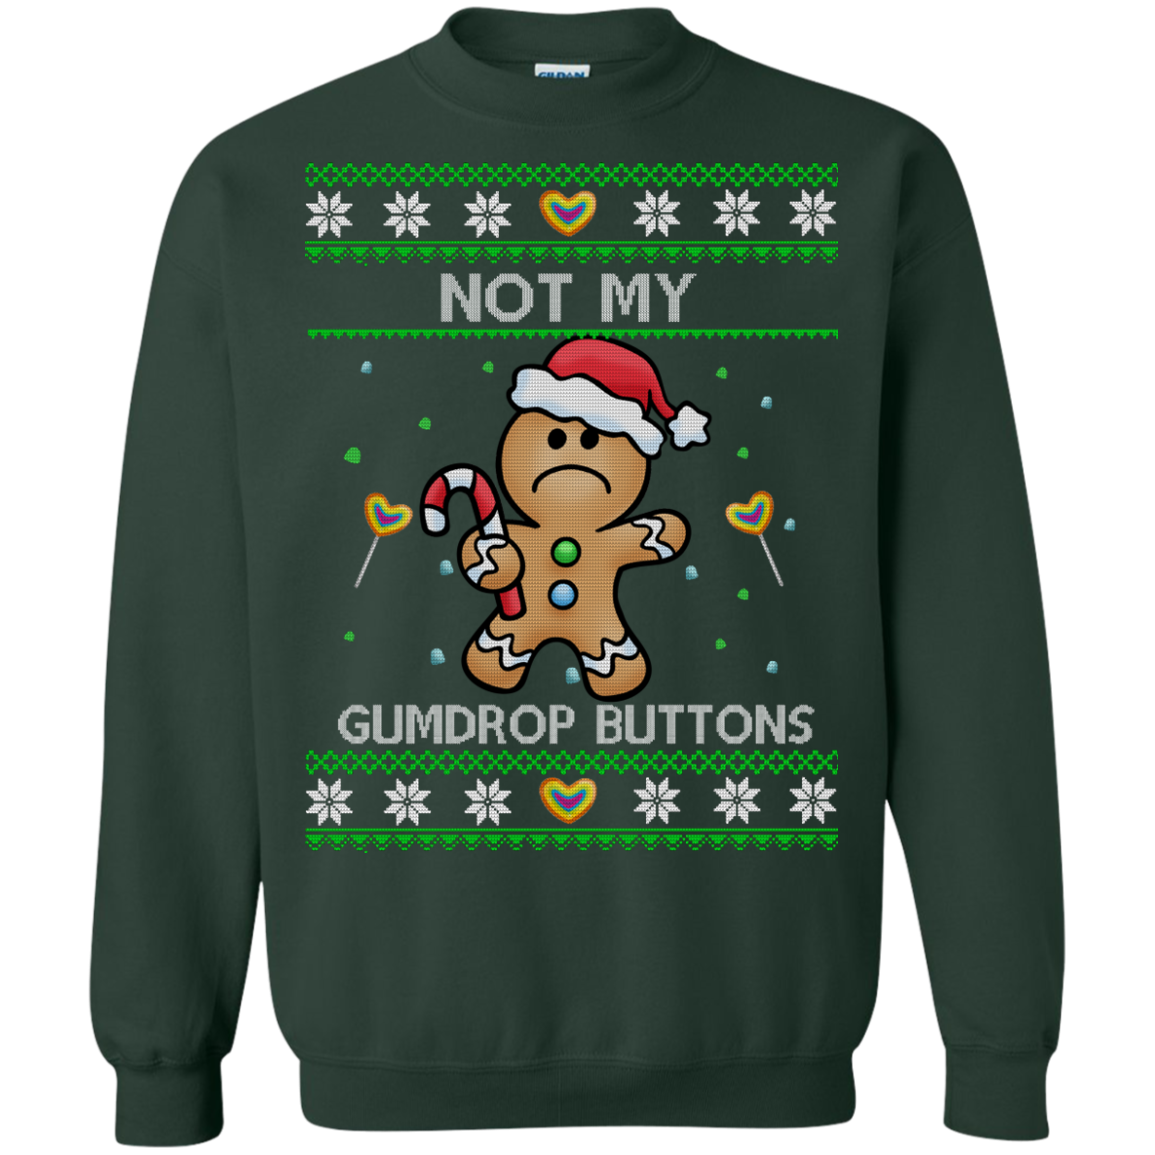 Shrek: Not My Gumdrop Buttons Christmas Sweater, Shirt, Hoodie